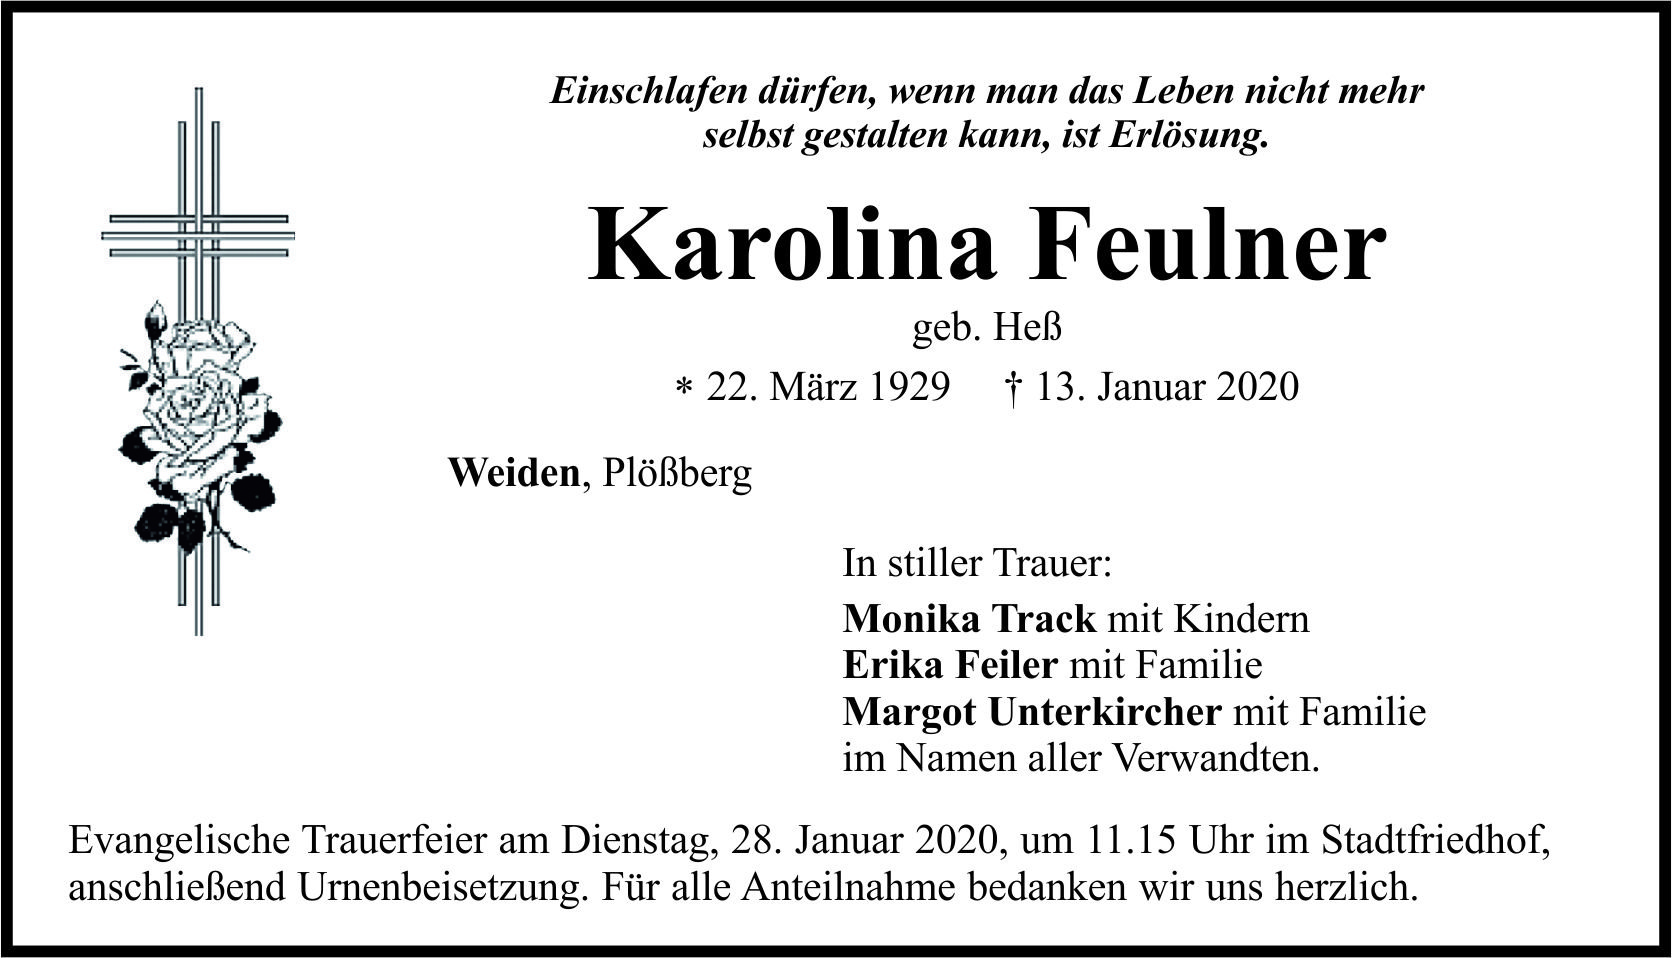 Traueranzeige Karolina Feulner, Weiden Plößberg